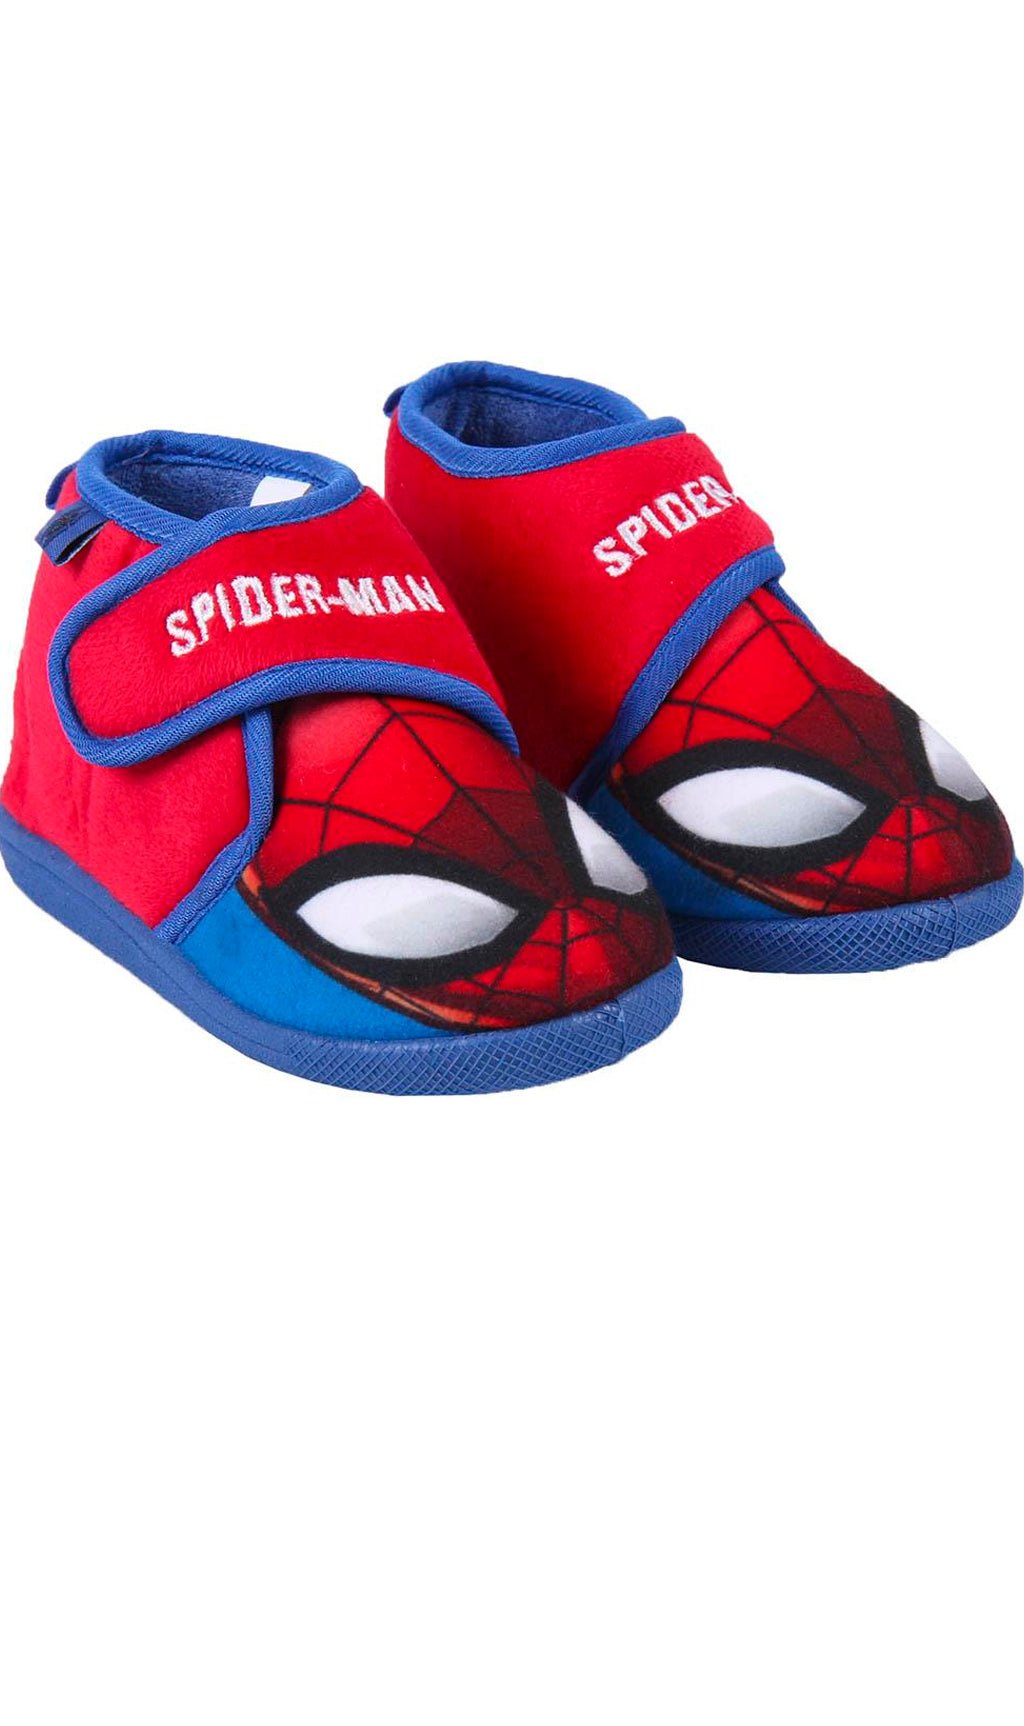 Cromprar online Zapatillas de Casa Spiderman para niños